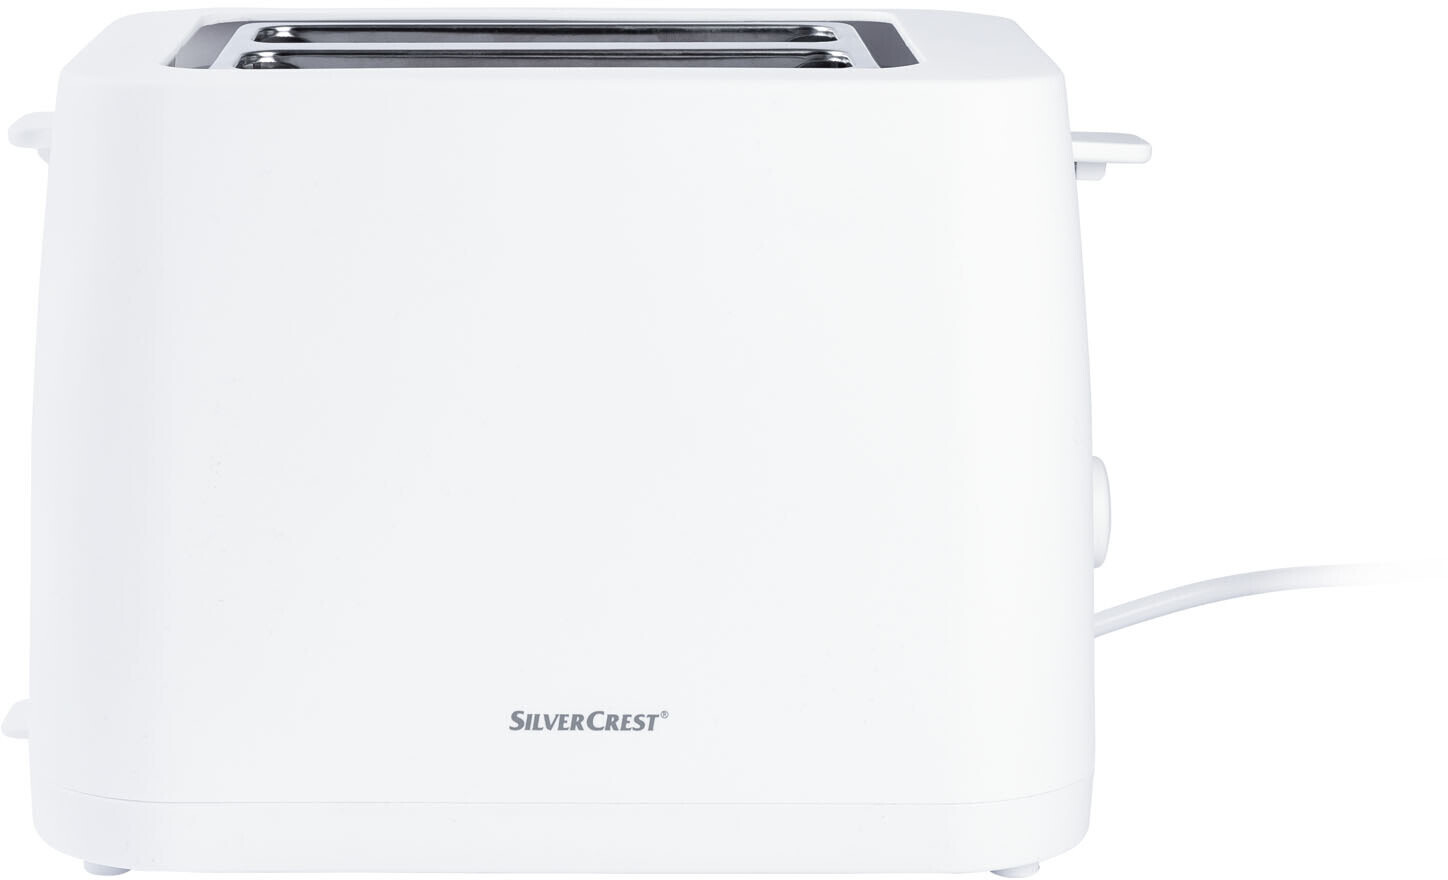 Doppelschlitz-Toaster | Silvercrest ab 19,90 Preisvergleich € bei